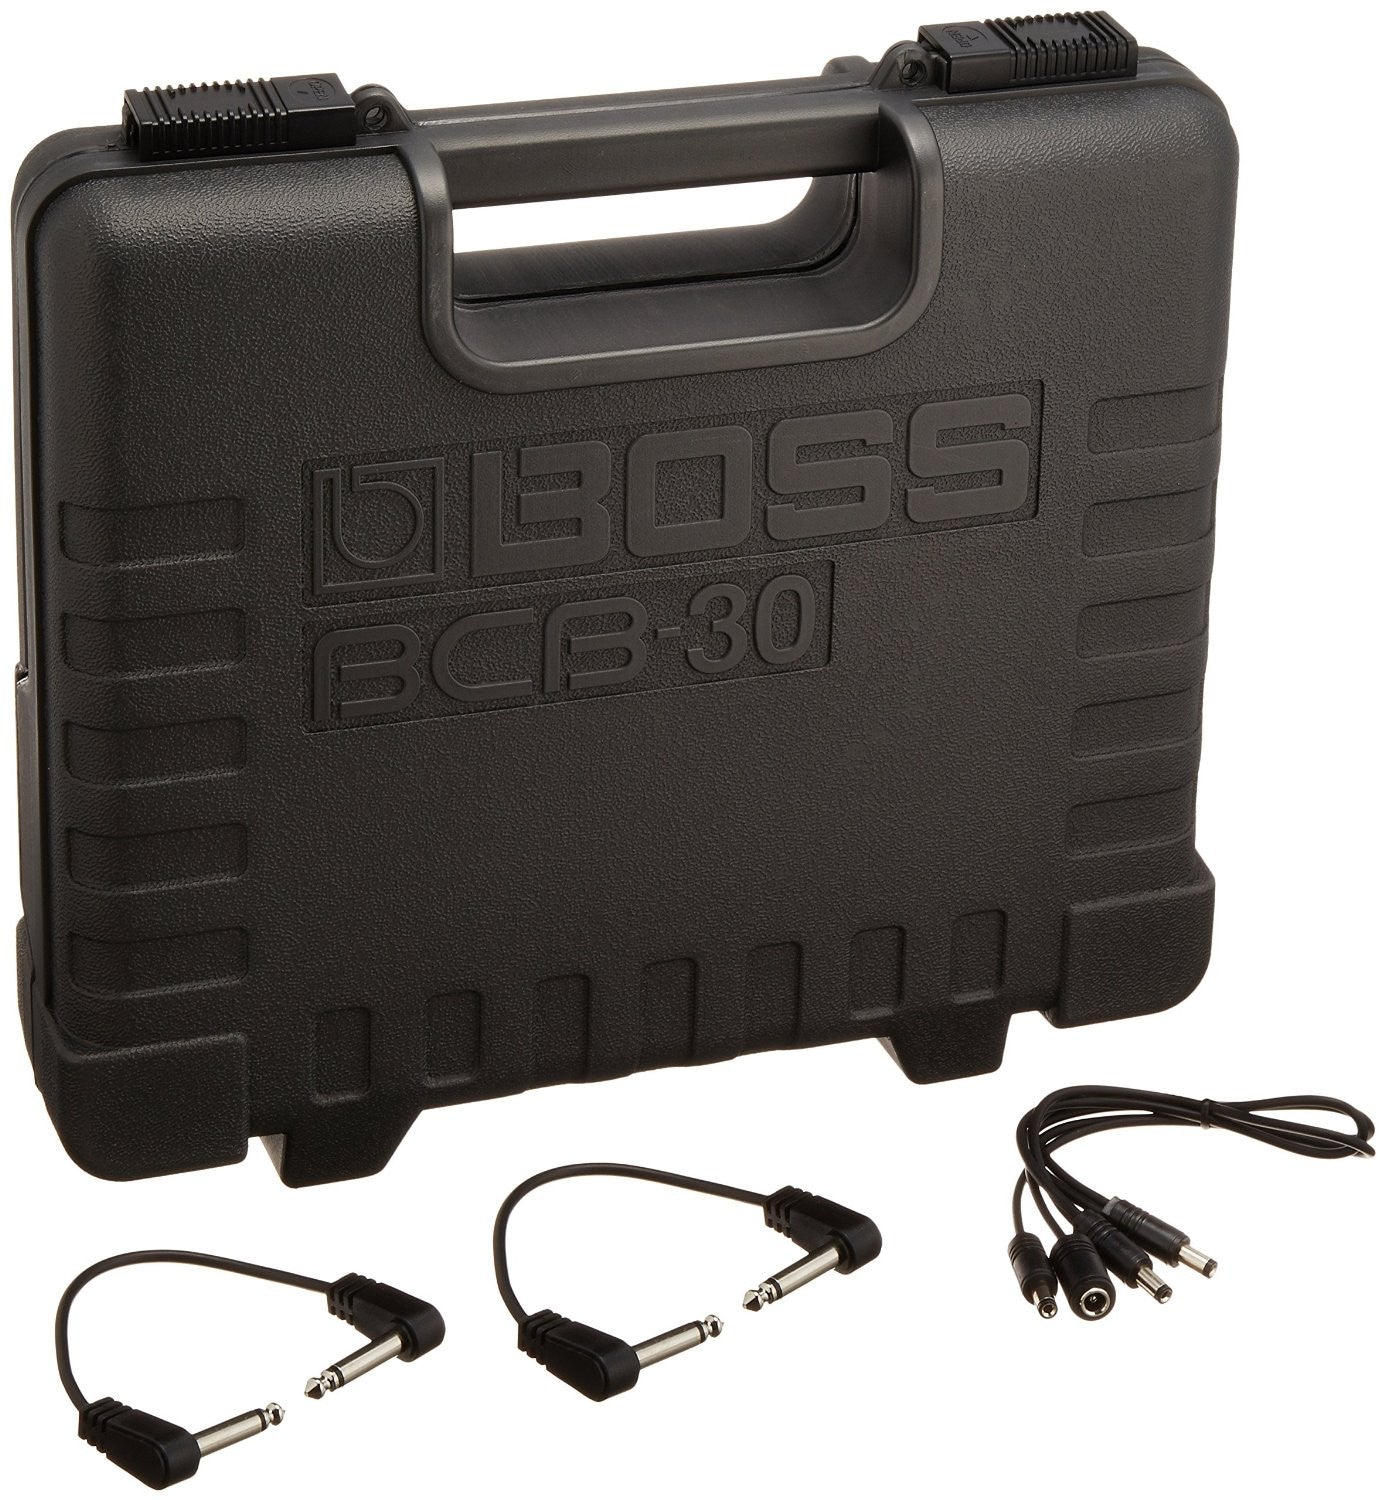 BOSS BCB-30 PEDALBOARD | BOSS , Zoso Music